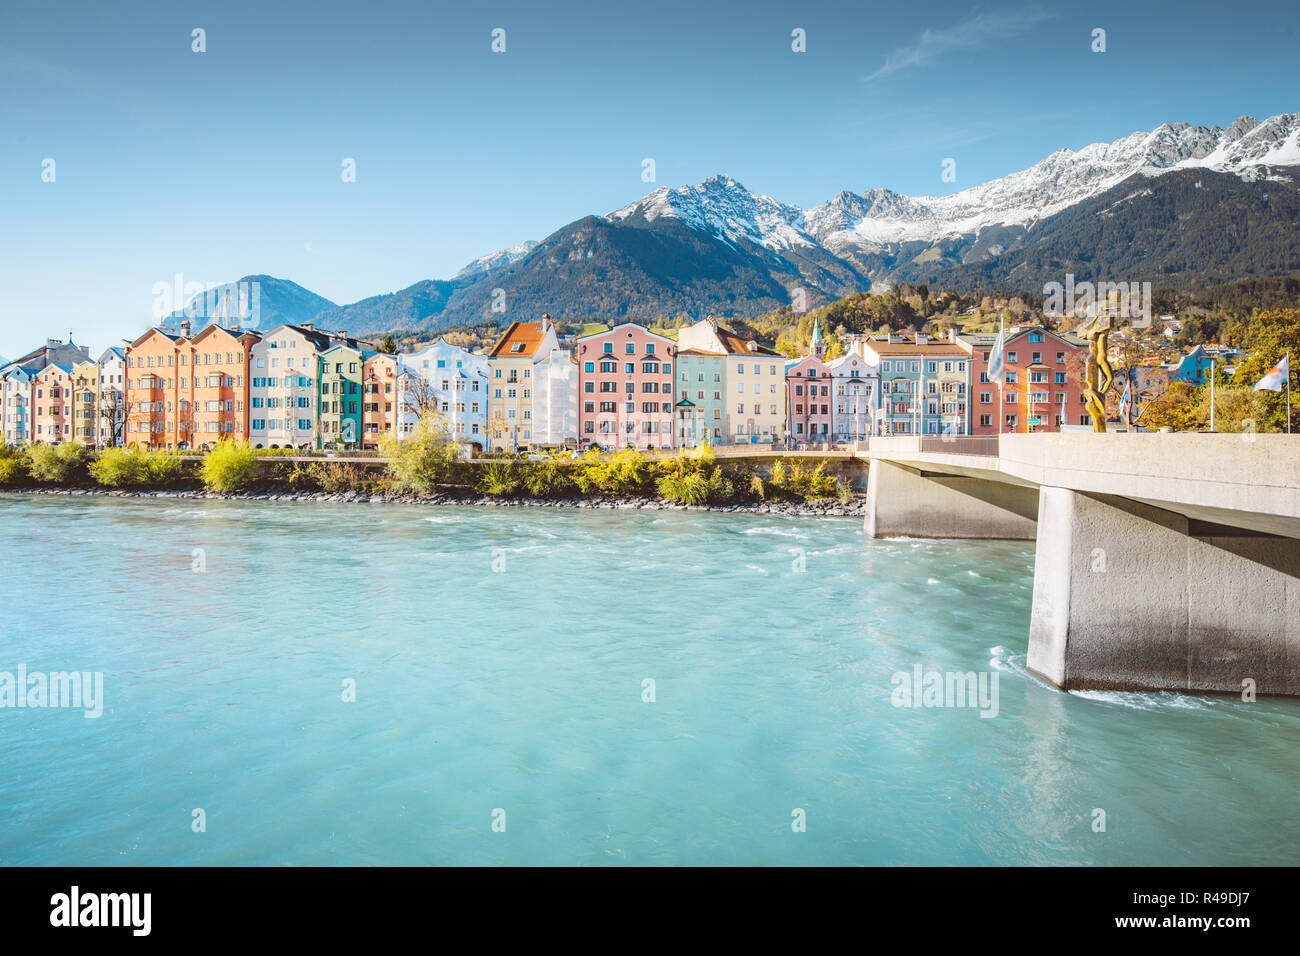 Centro histórico de la ciudad de Innsbruck con coloridas casas a lo largo de río Inn y famosas cumbres de montaña de Austria en el fondo, Tirol, Austria Foto de stock